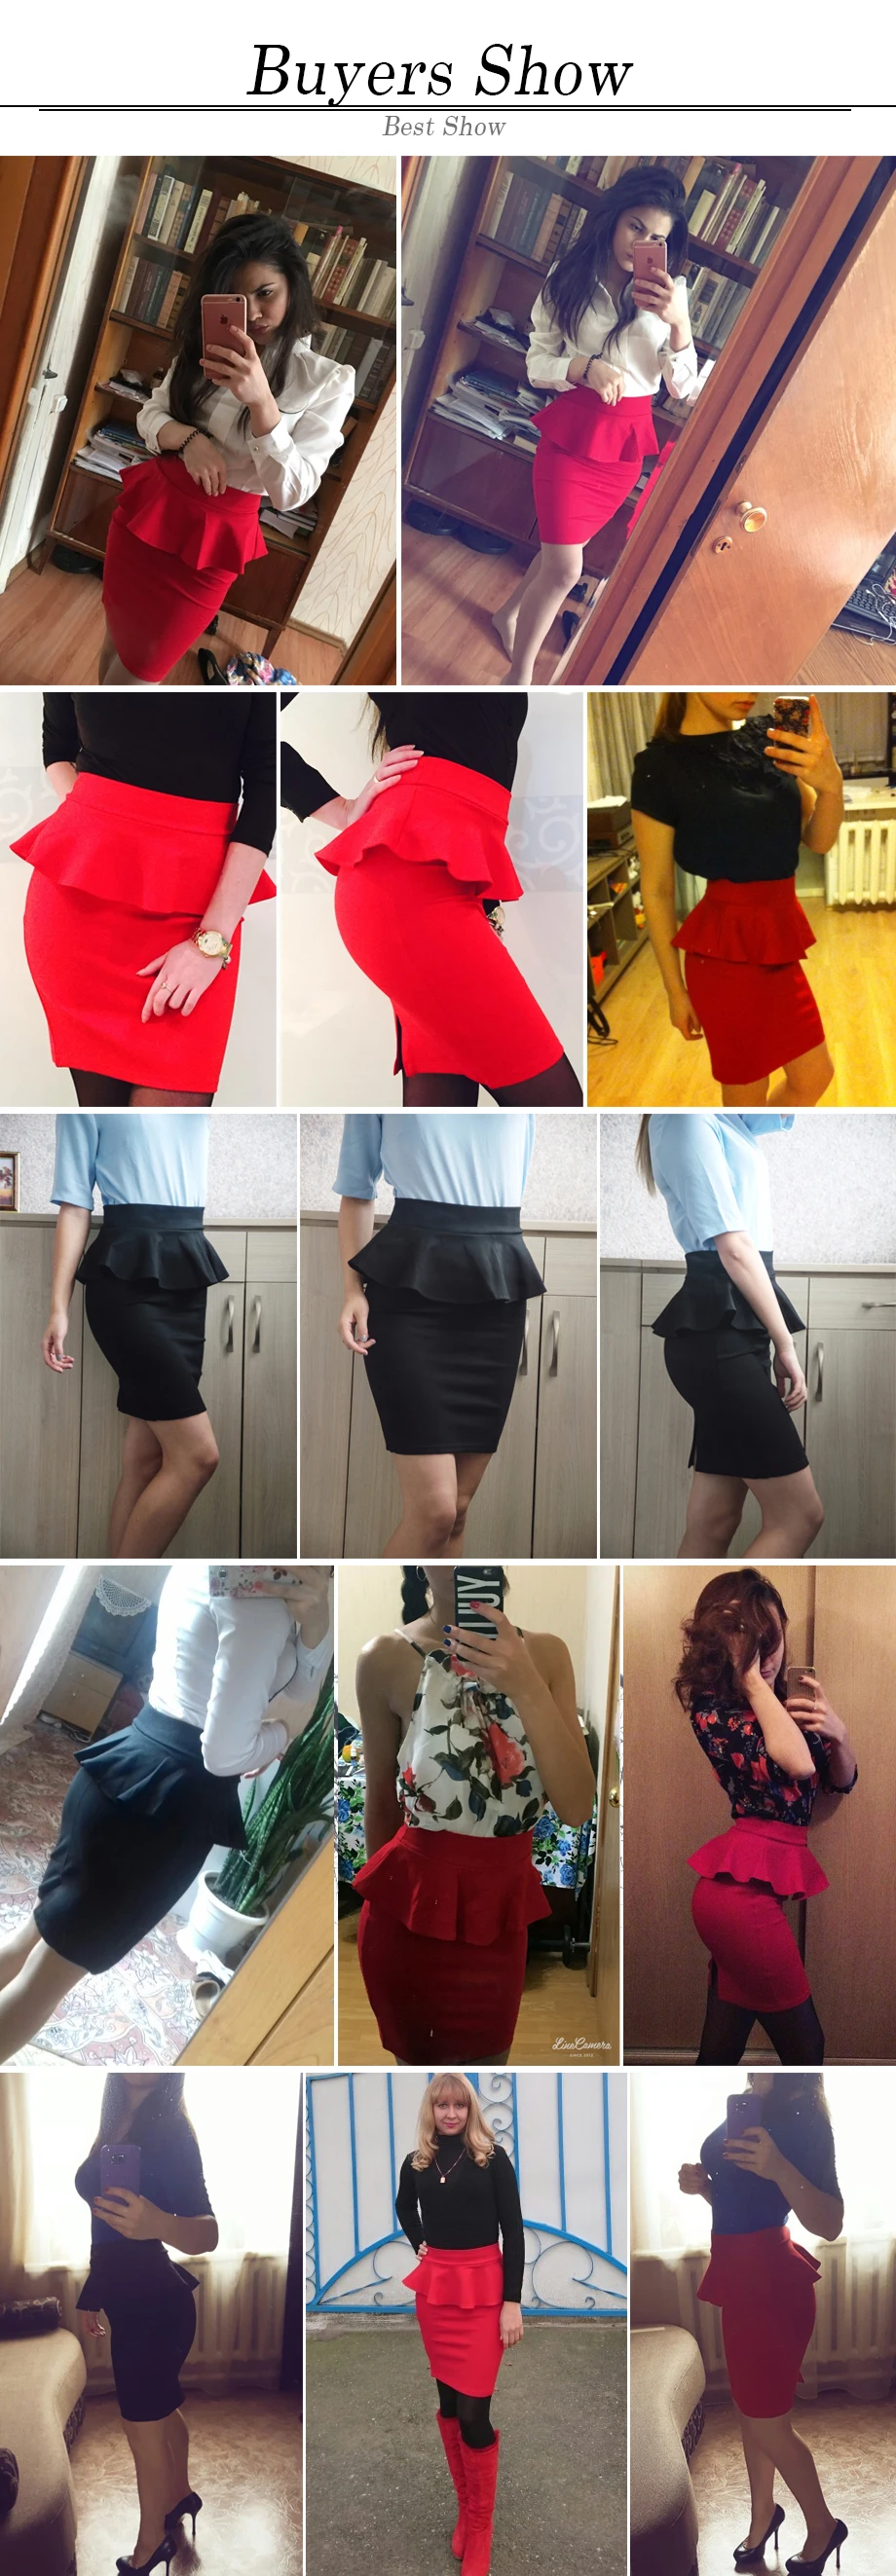 5XL больших размеров Женщины Карандаш Юбки Мода рябить женщины офисные юбки короткие работы юбки черный красный